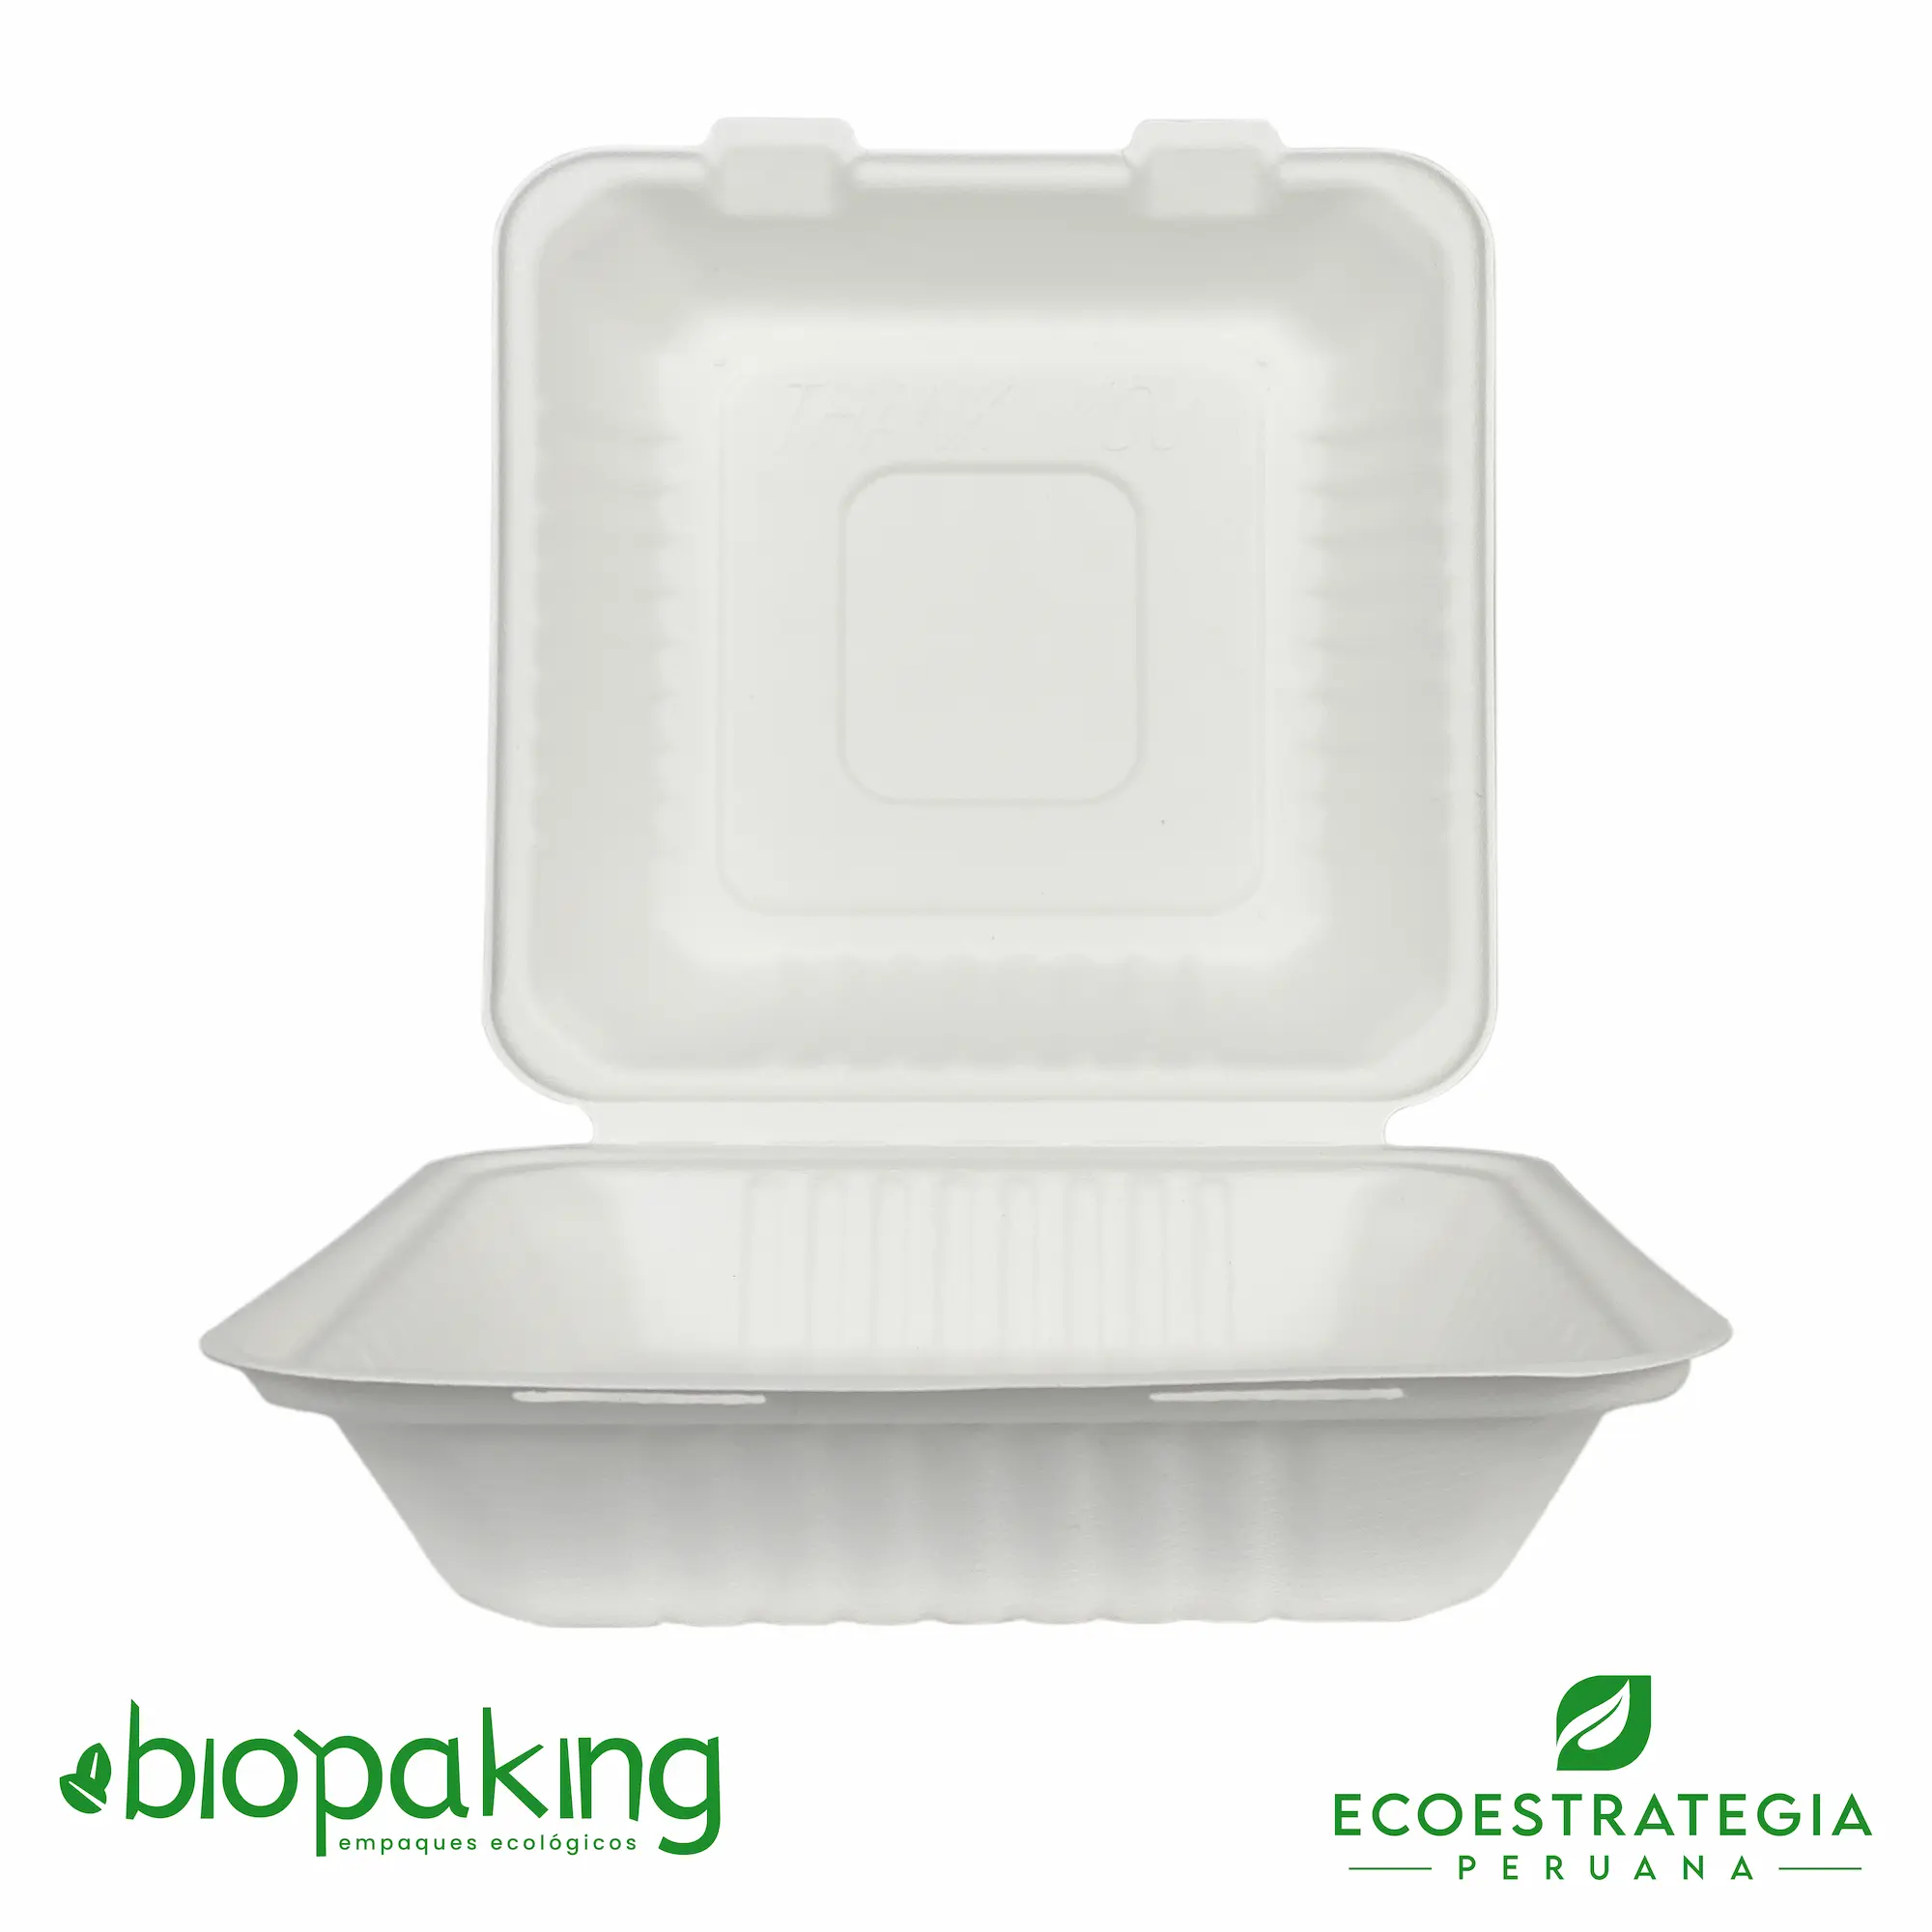 Este envase CT3 tiene una capacidad de 1200ml. Producto de materiales biodegradables, hecho a base de fibra de caña de azúcar, empaques y tapers para comidas